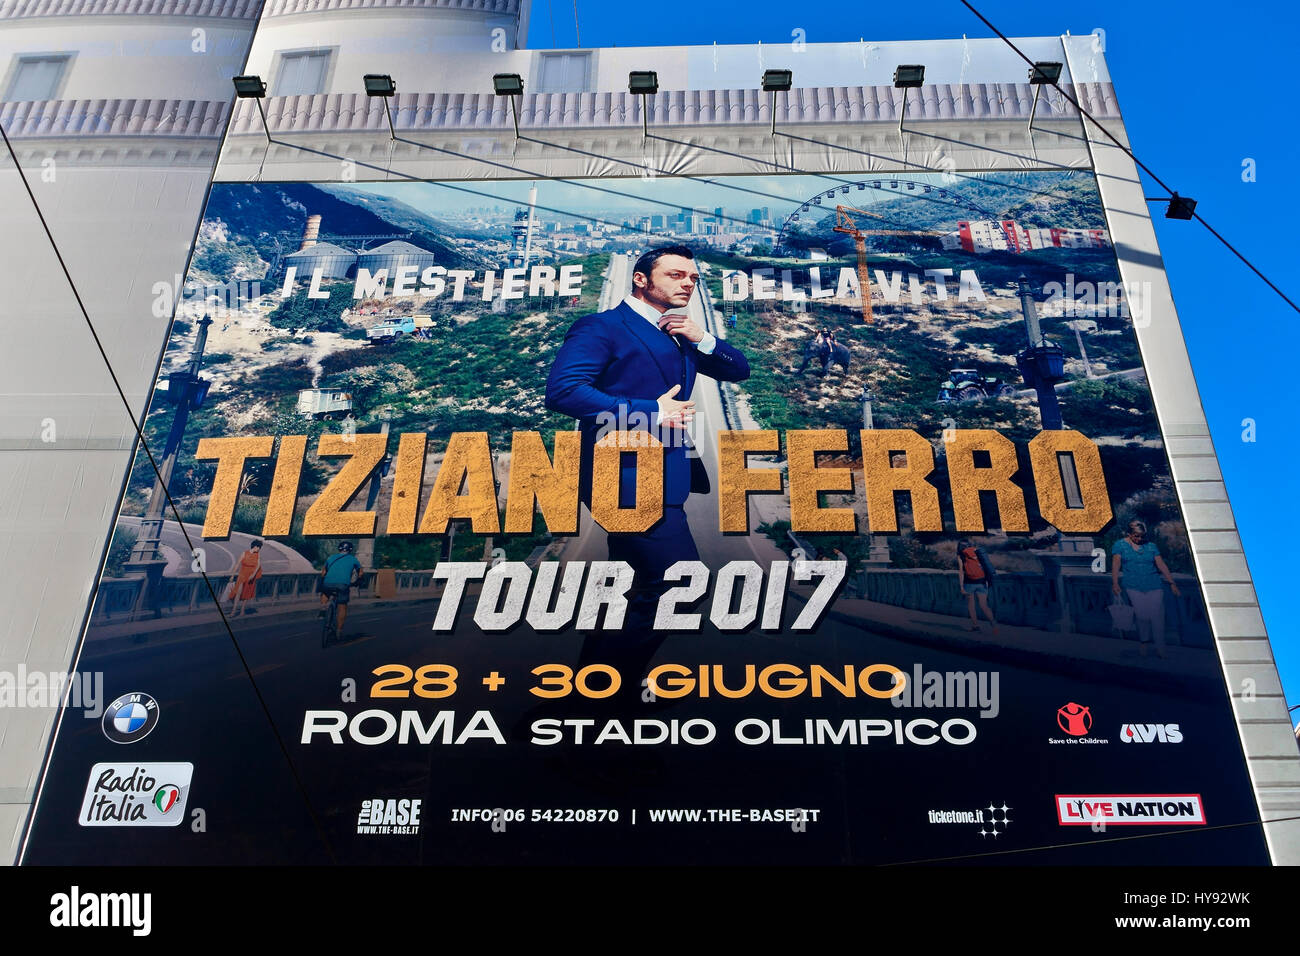 Tiziano Ferro italienischen Sänger. "Il mestiere della vita" Tour 2017, 28. 30. Juni in Rom Stadium. Große Concert Poster auf einem Gebäude Fassade in Rom, Italien. Stockfoto